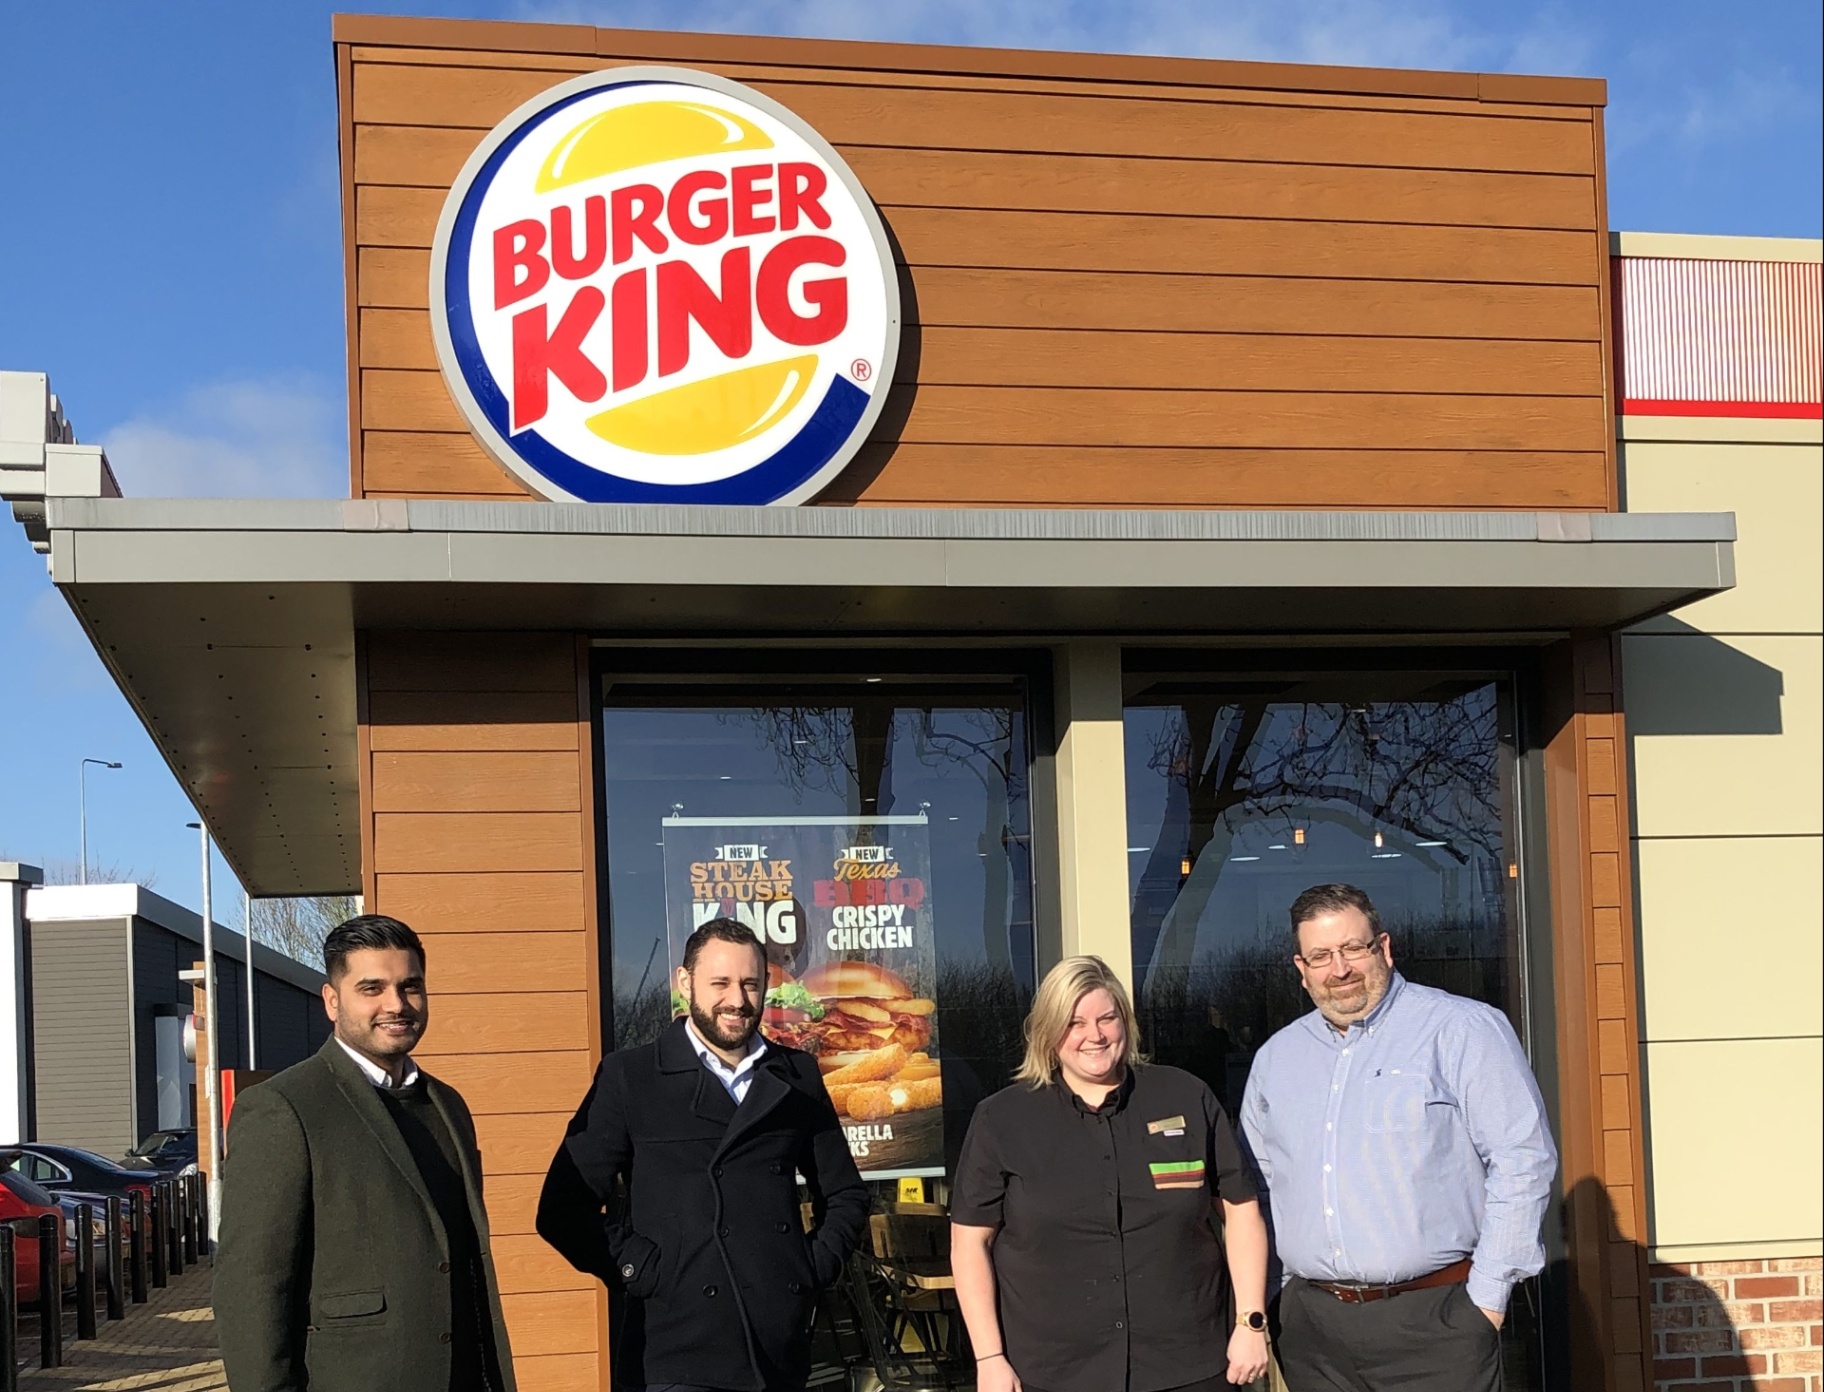 Aprende Cómo Solicitar Empleo en las Ofertas de Trabajo de Burger King